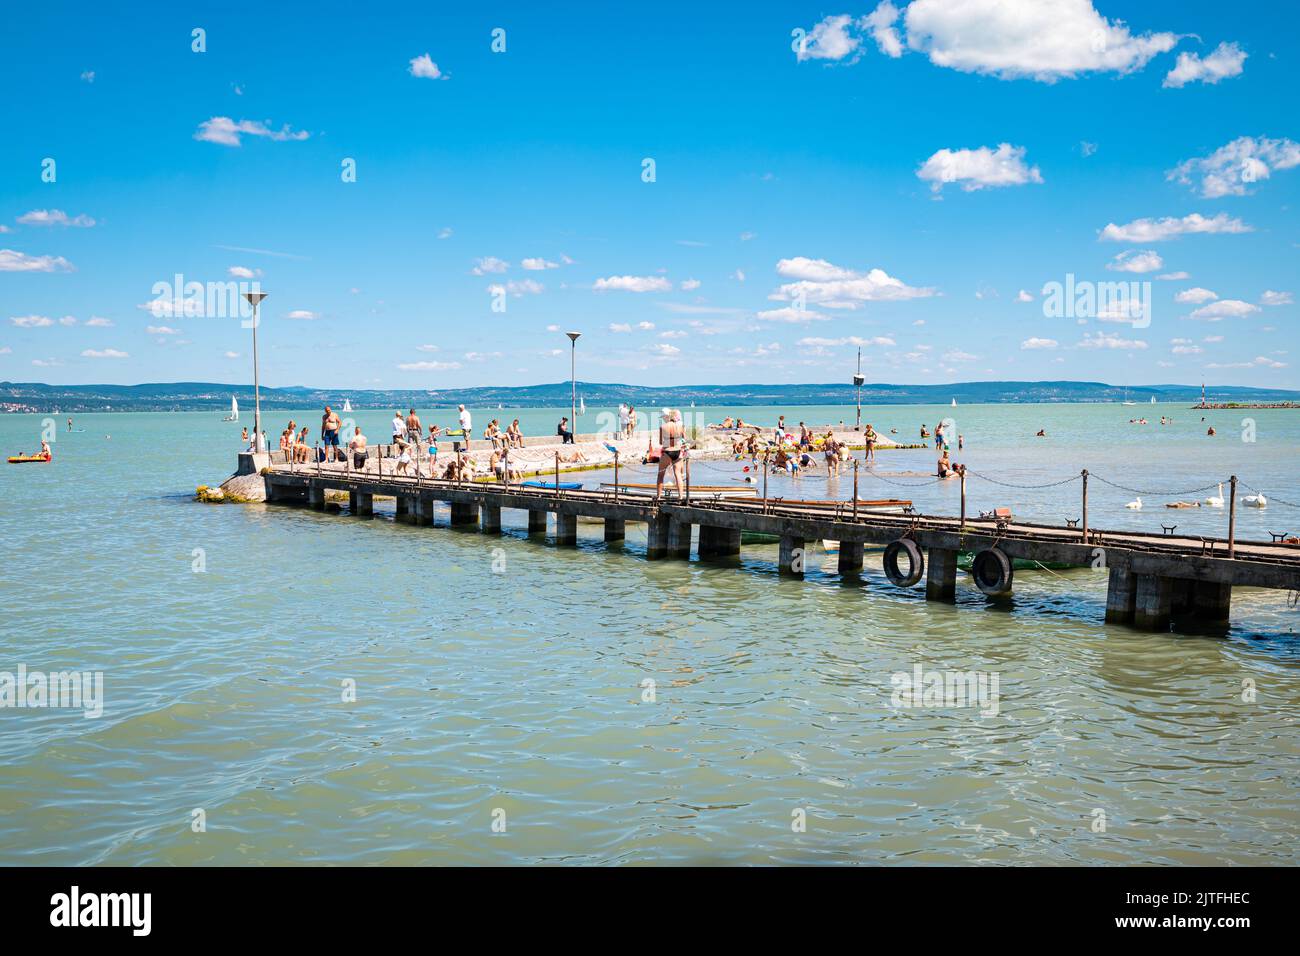 Wooden jetty with tourists at Lake Balaton, Hungary Stock Photo